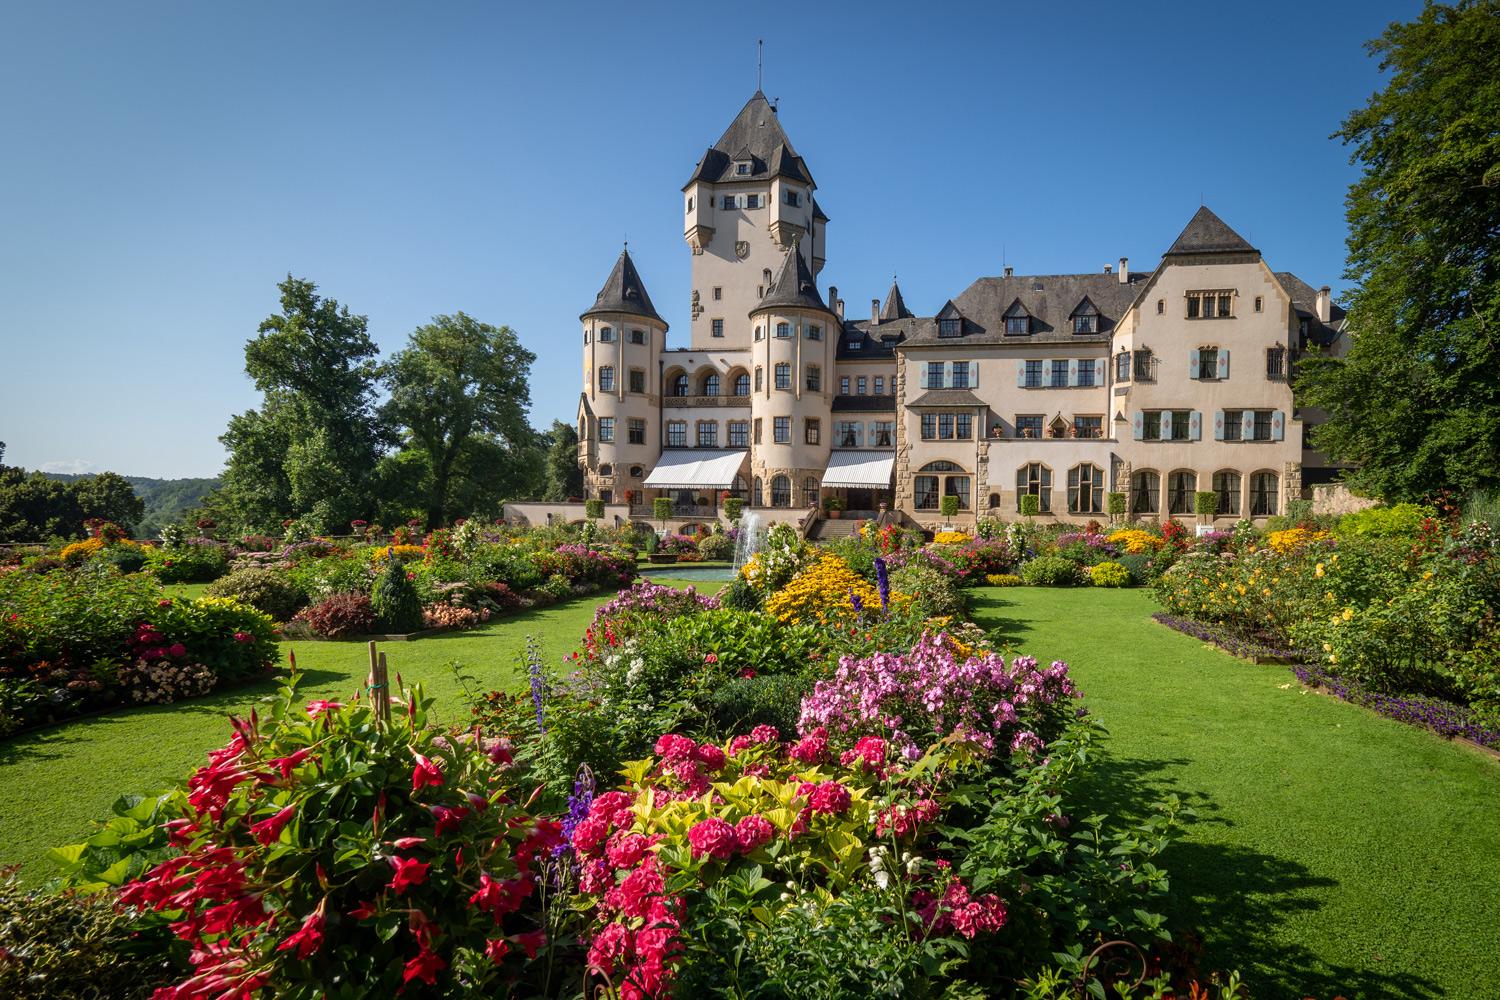 Les Jardins pendant le mois d’août 2019 - Château de Berg